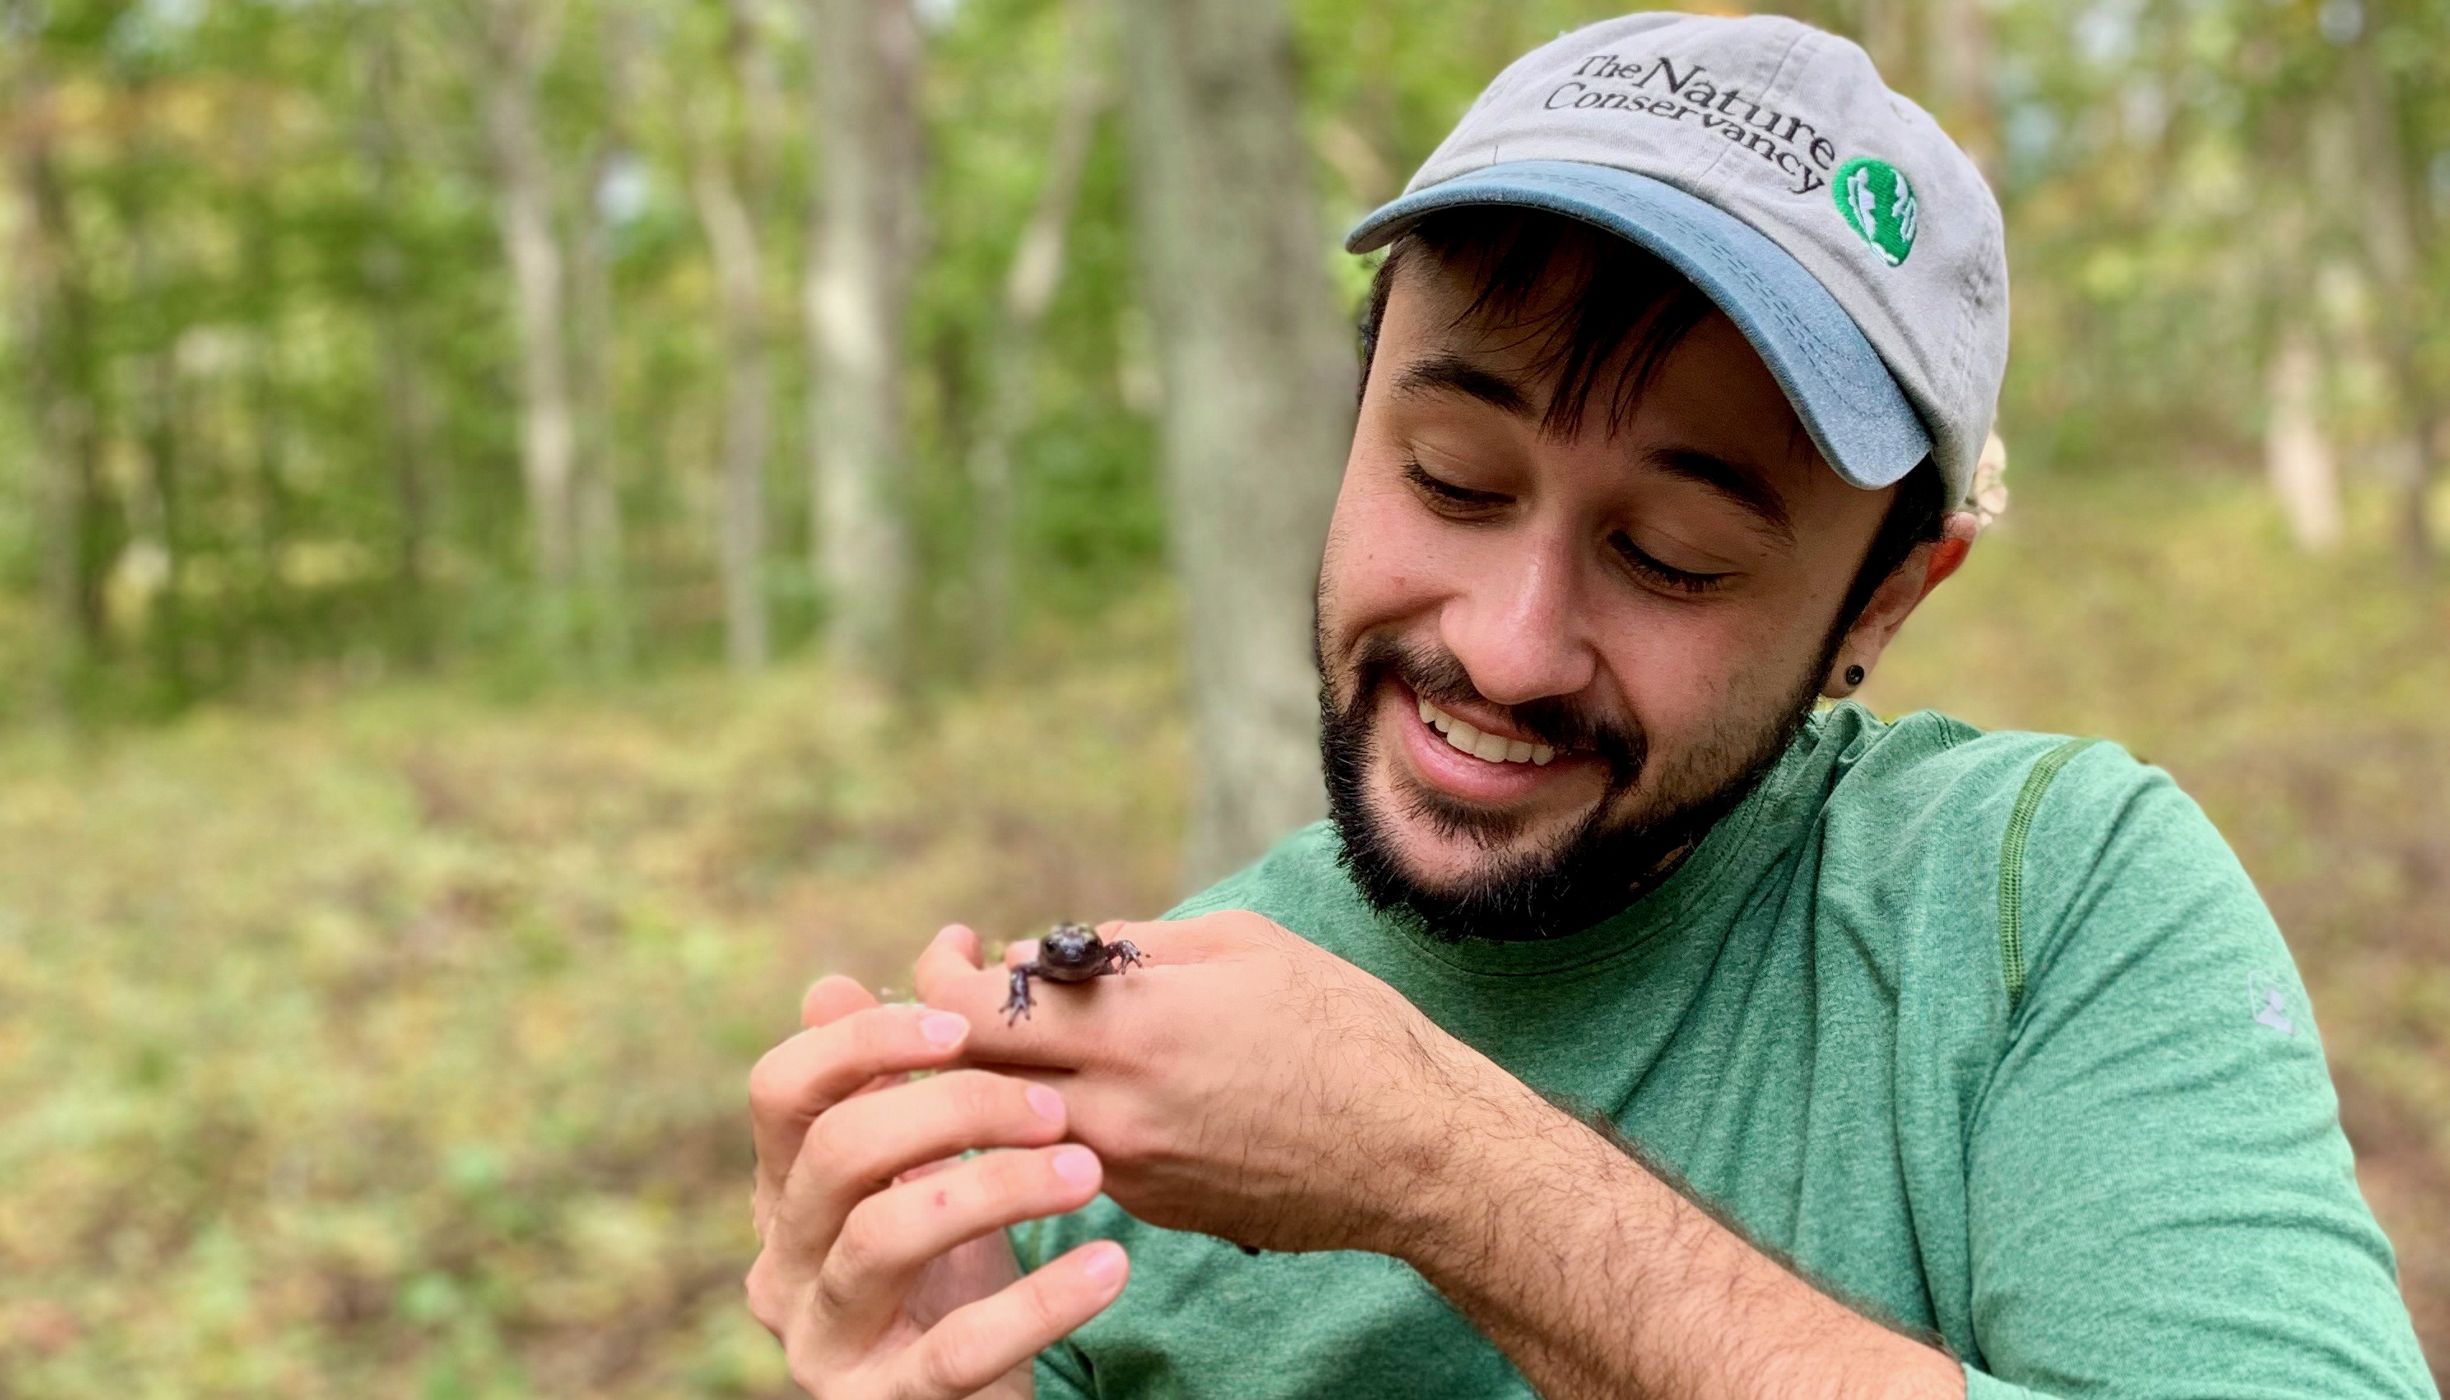 La imagen de una persona que tiene puesta una gorra de béisbol que dice "The Nature Conservancy", sonríe y está mirando una salamandra que tiene en la mano.